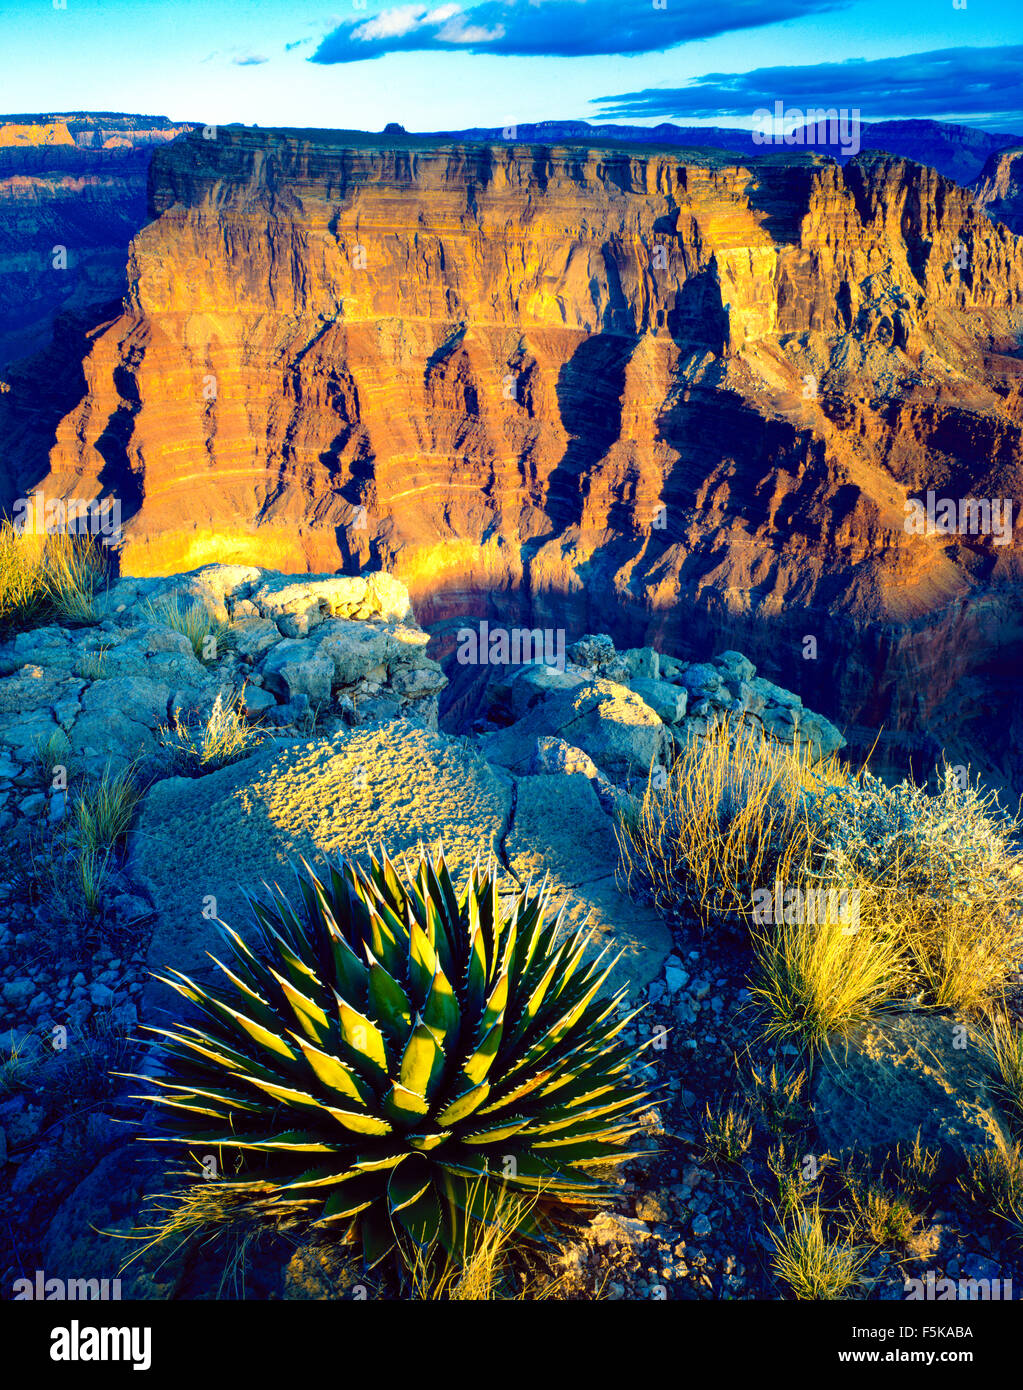 Avis de Chuar Butte depuis le cap de la solitude, du Parc National de Grand Canyon, Colorado, Arizona, South Rim Banque D'Images